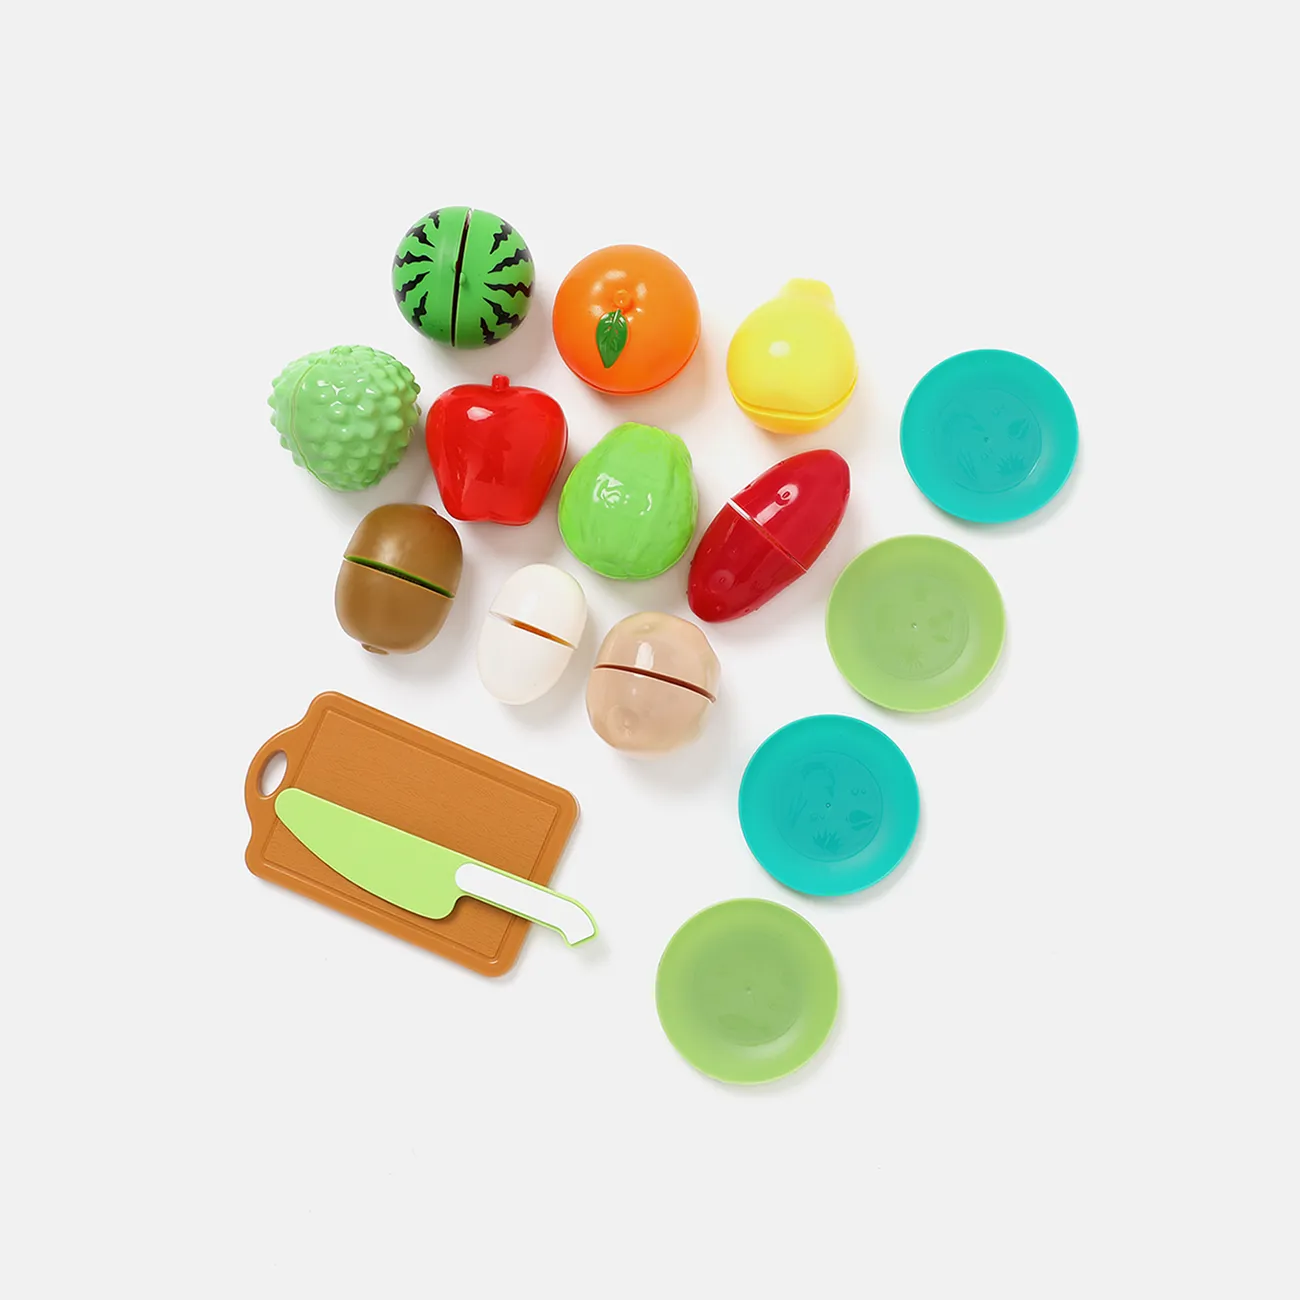 16 قطعة خالية من مادة BPA البلاستيكية ، لعبة طعام للأطفال قابلة للتقطيع ، مجموعة خضروات وفواكه مع سكاكين ولوح تقطيع وألواح (سكين لون عشوائي) اللون- أ big image 1